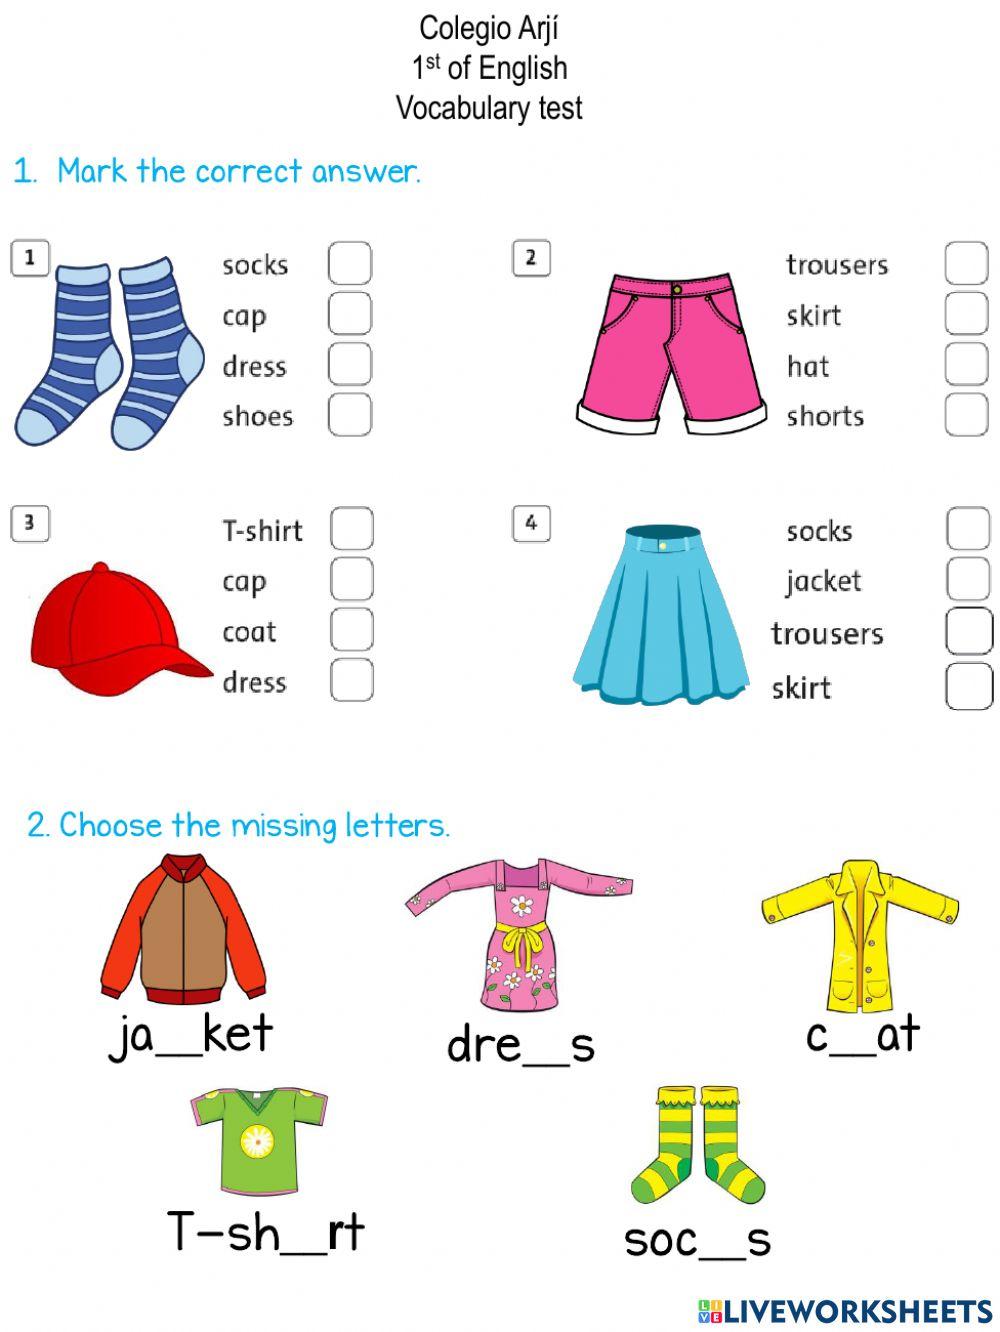 Vocabulary Clothes B-I